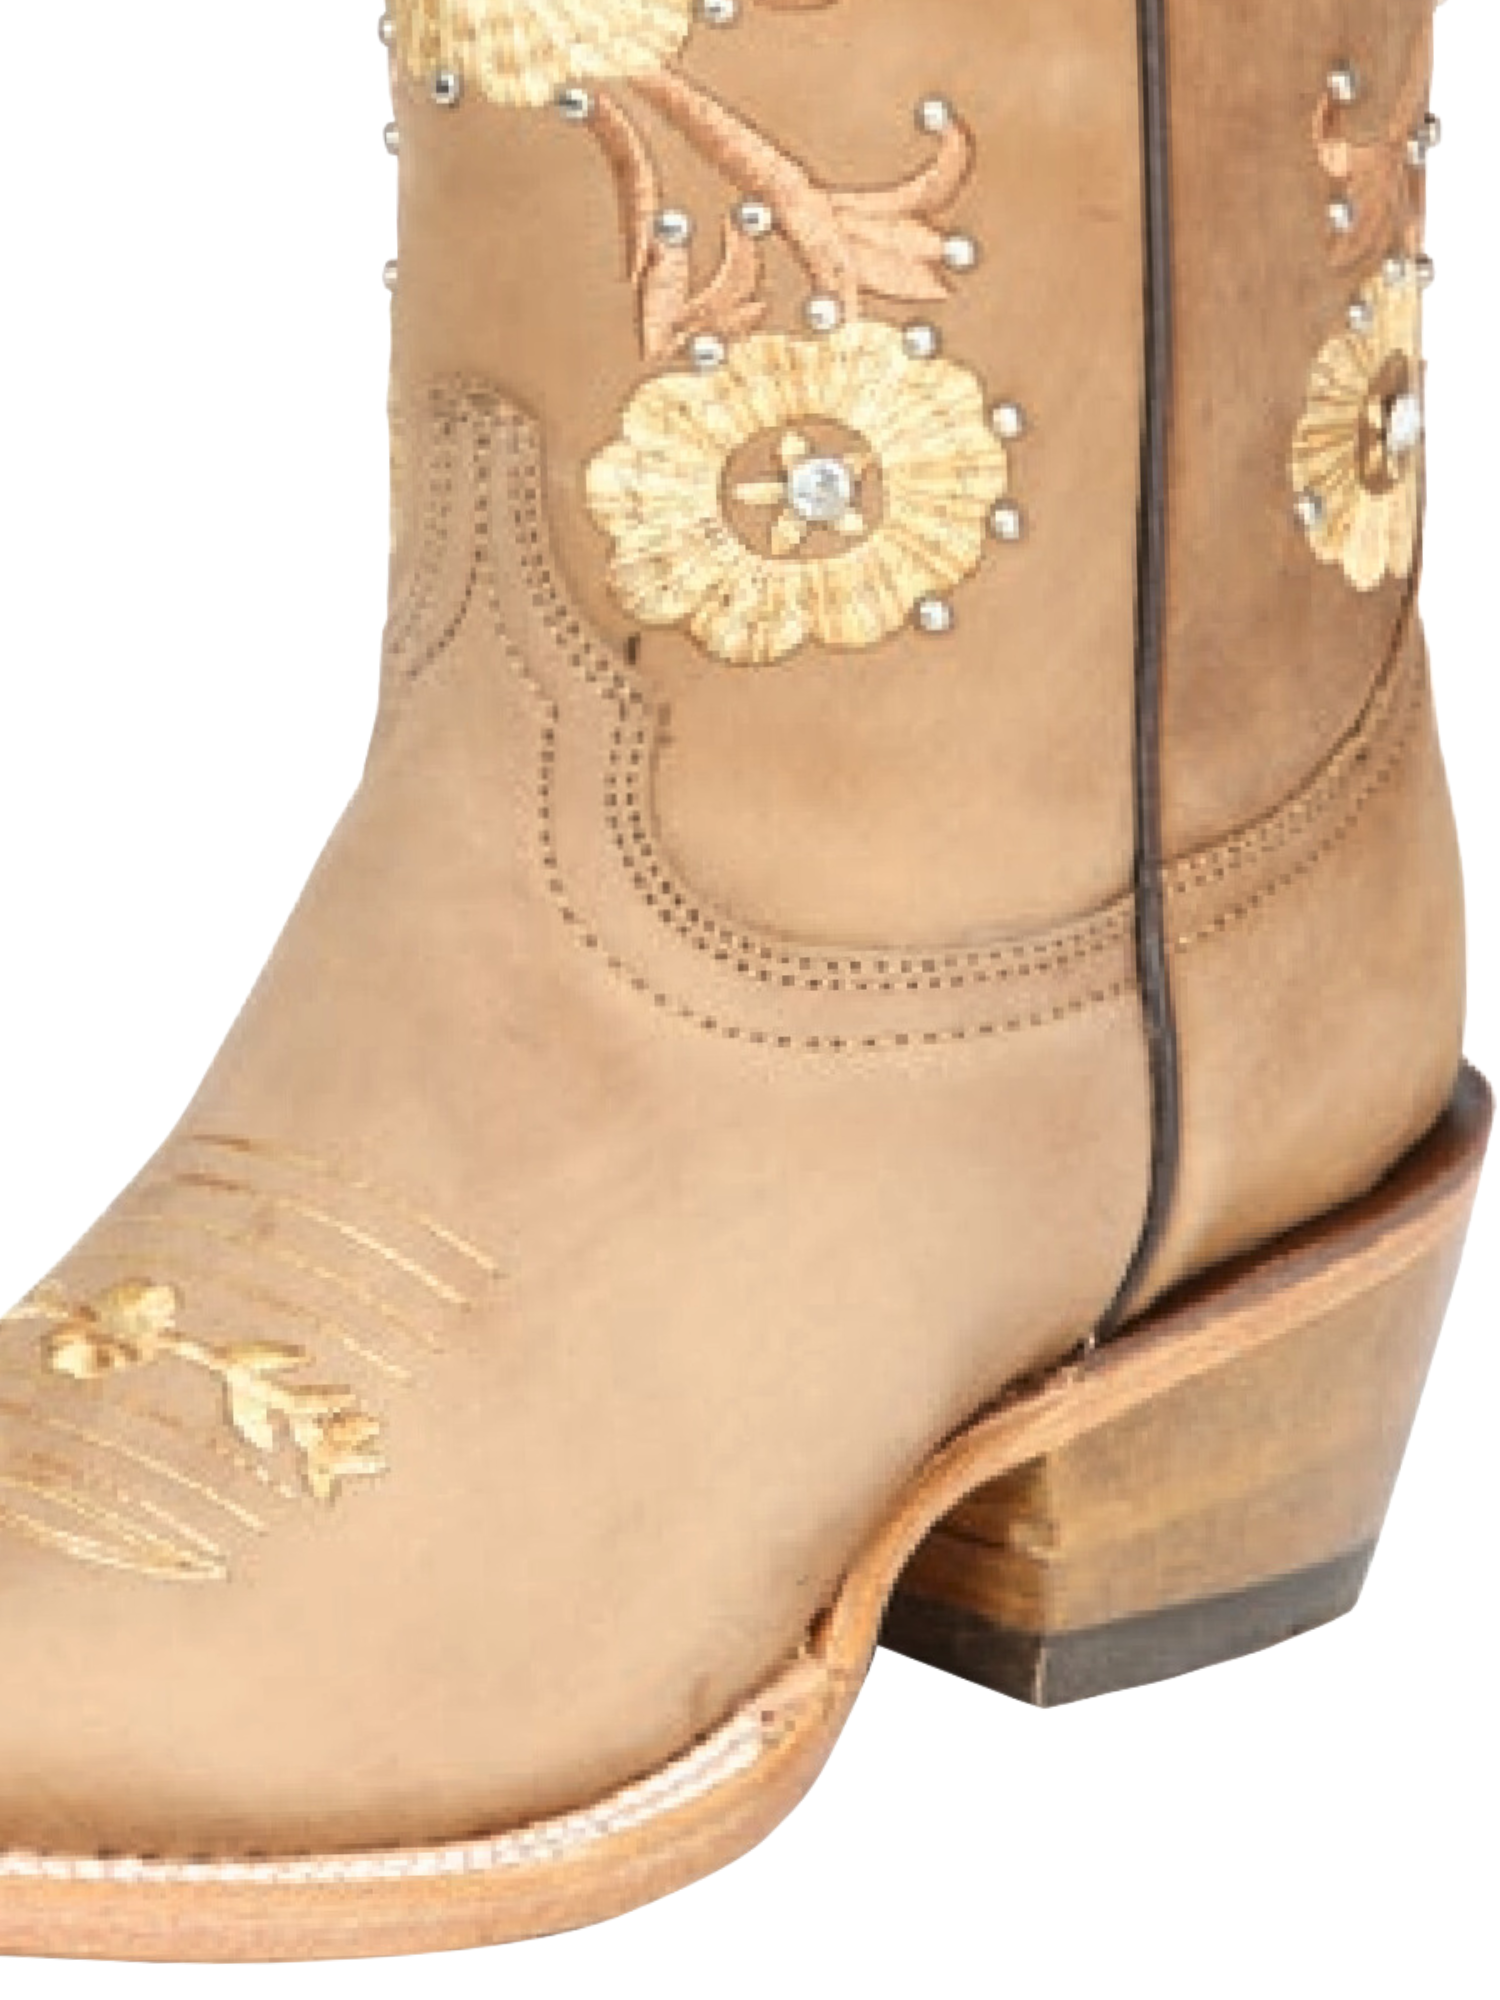 Botas Vaqueras Rodeo con Tubo Bordado de Flores de Piel Genuina para Mujer 'Jar Boots' - ID: 126450 Cowgirl Boots Jar Boots 